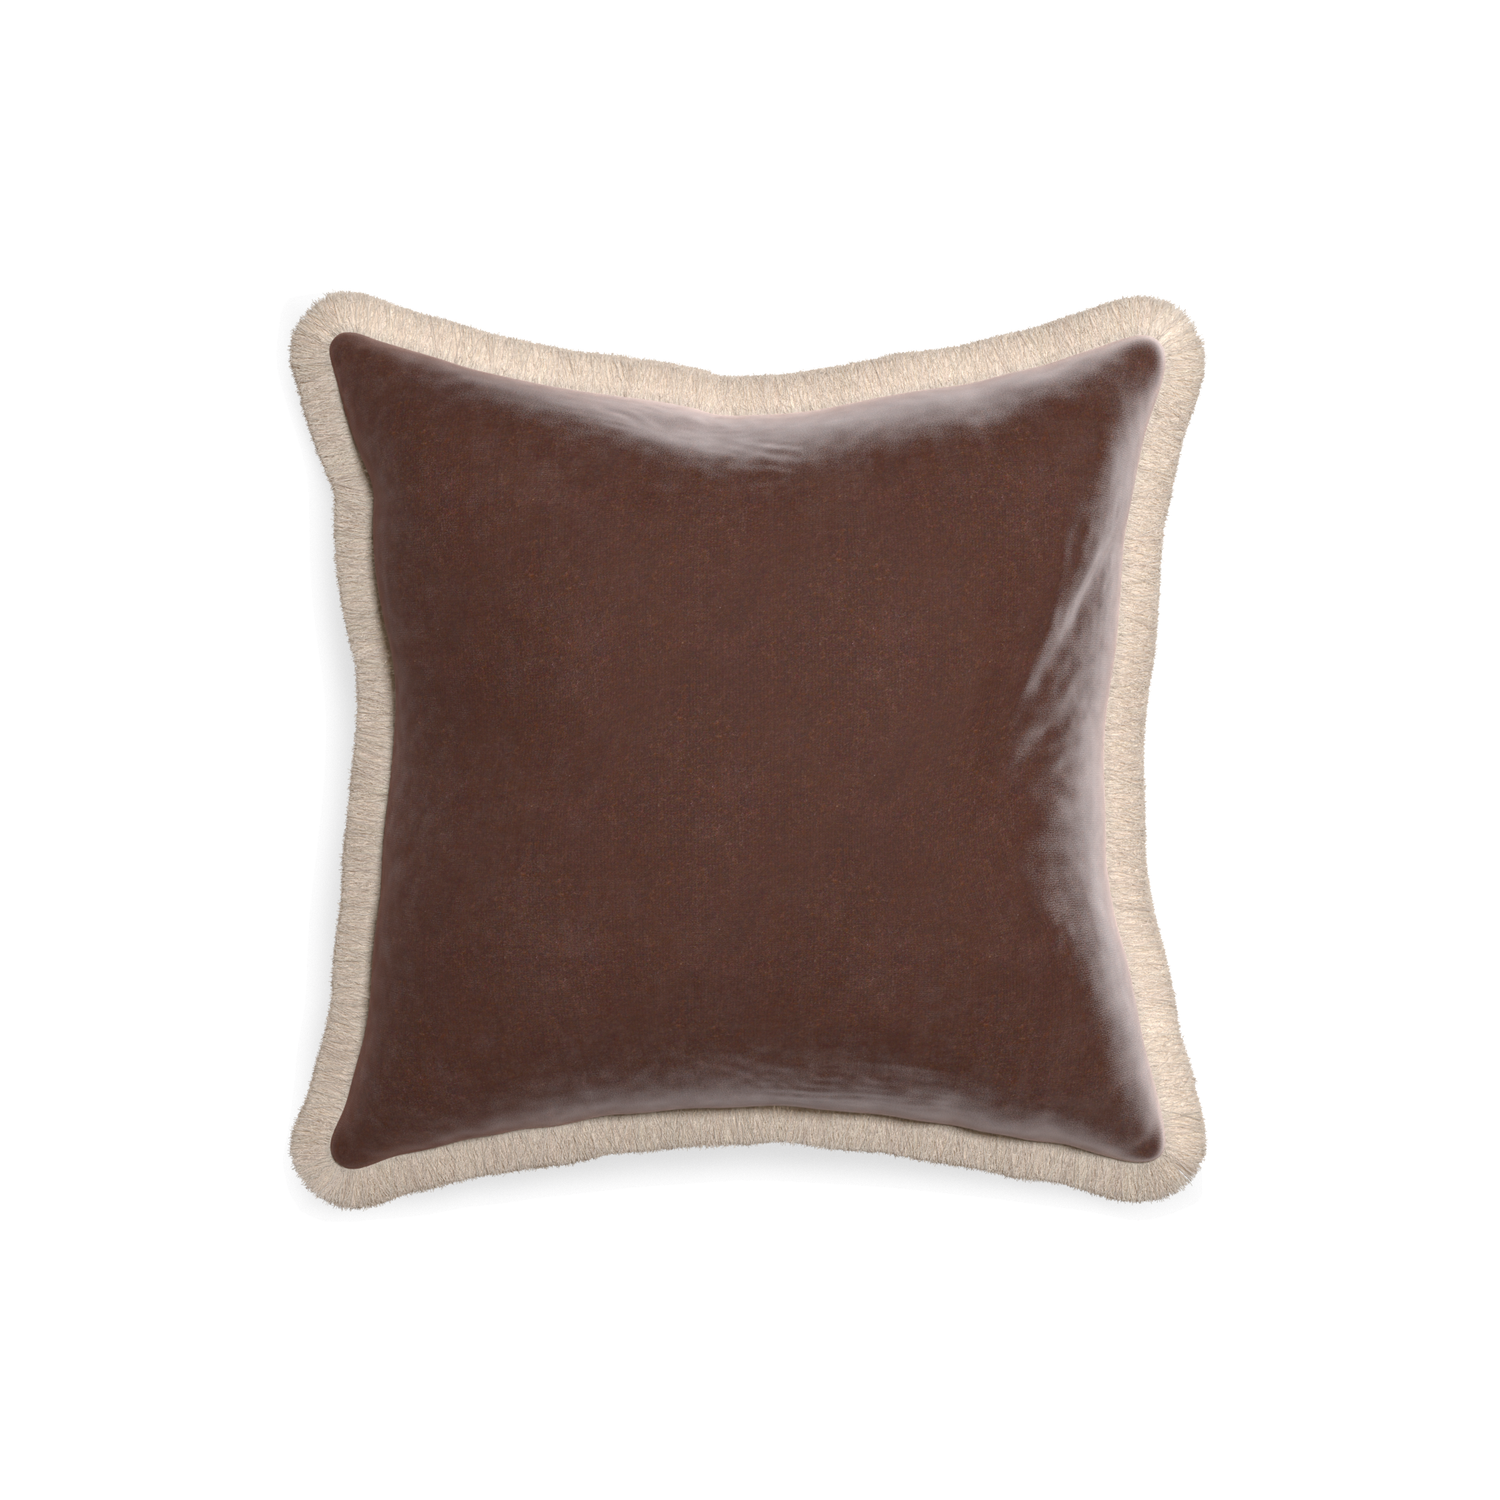 18-square walnut velvet custom pillow with cream fringe on white background